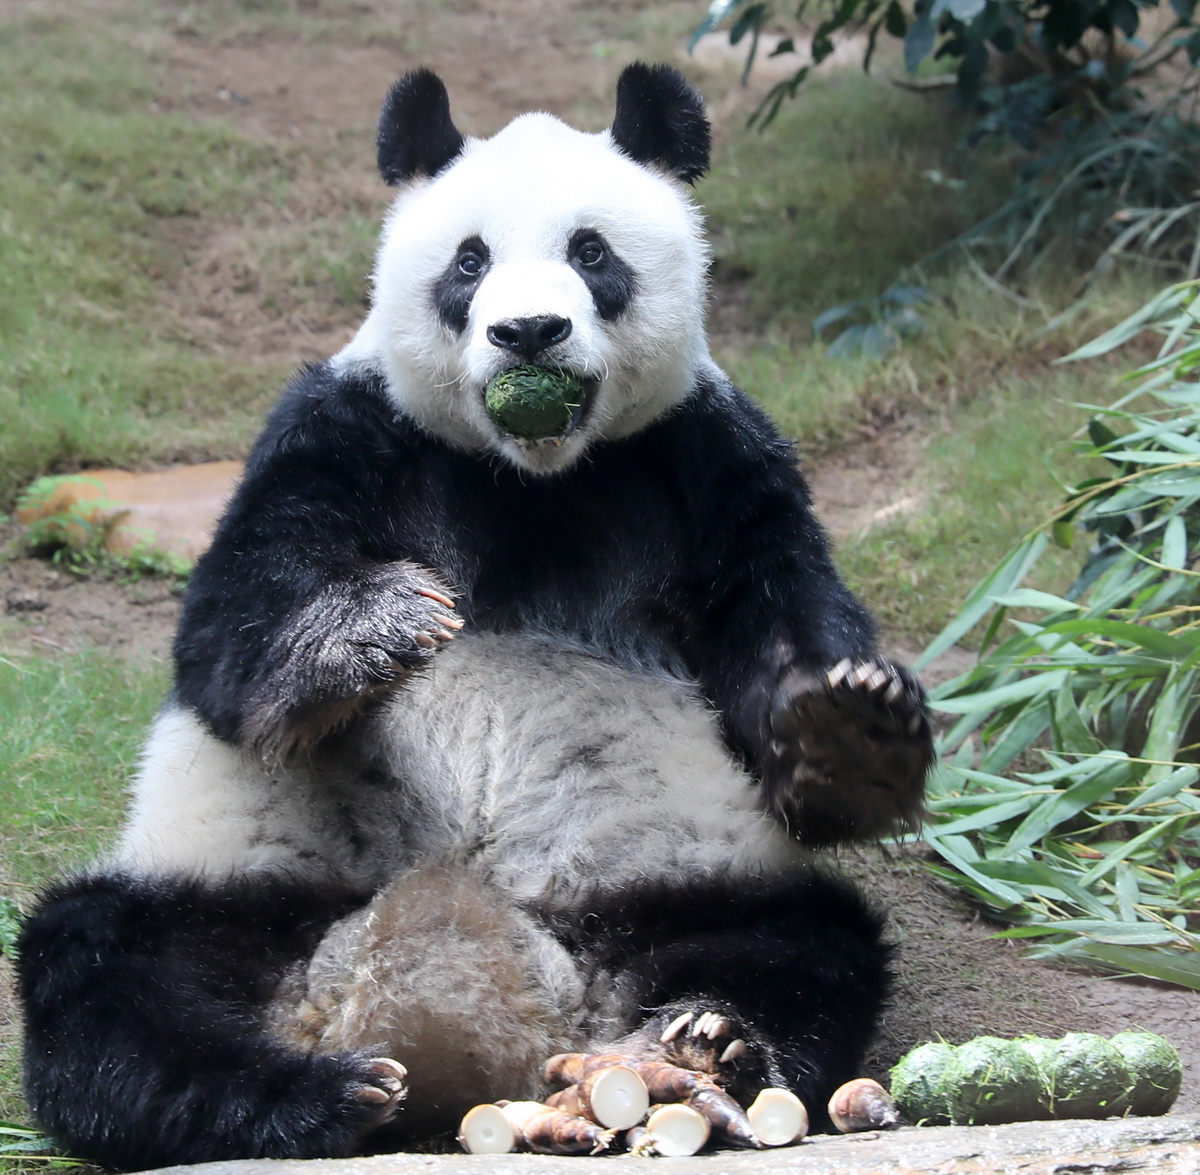 在香港海洋公园，大熊猫“安安”坐在小山坡上吃竹叶团（5月11日摄）。新华社记者 吴晓初 摄